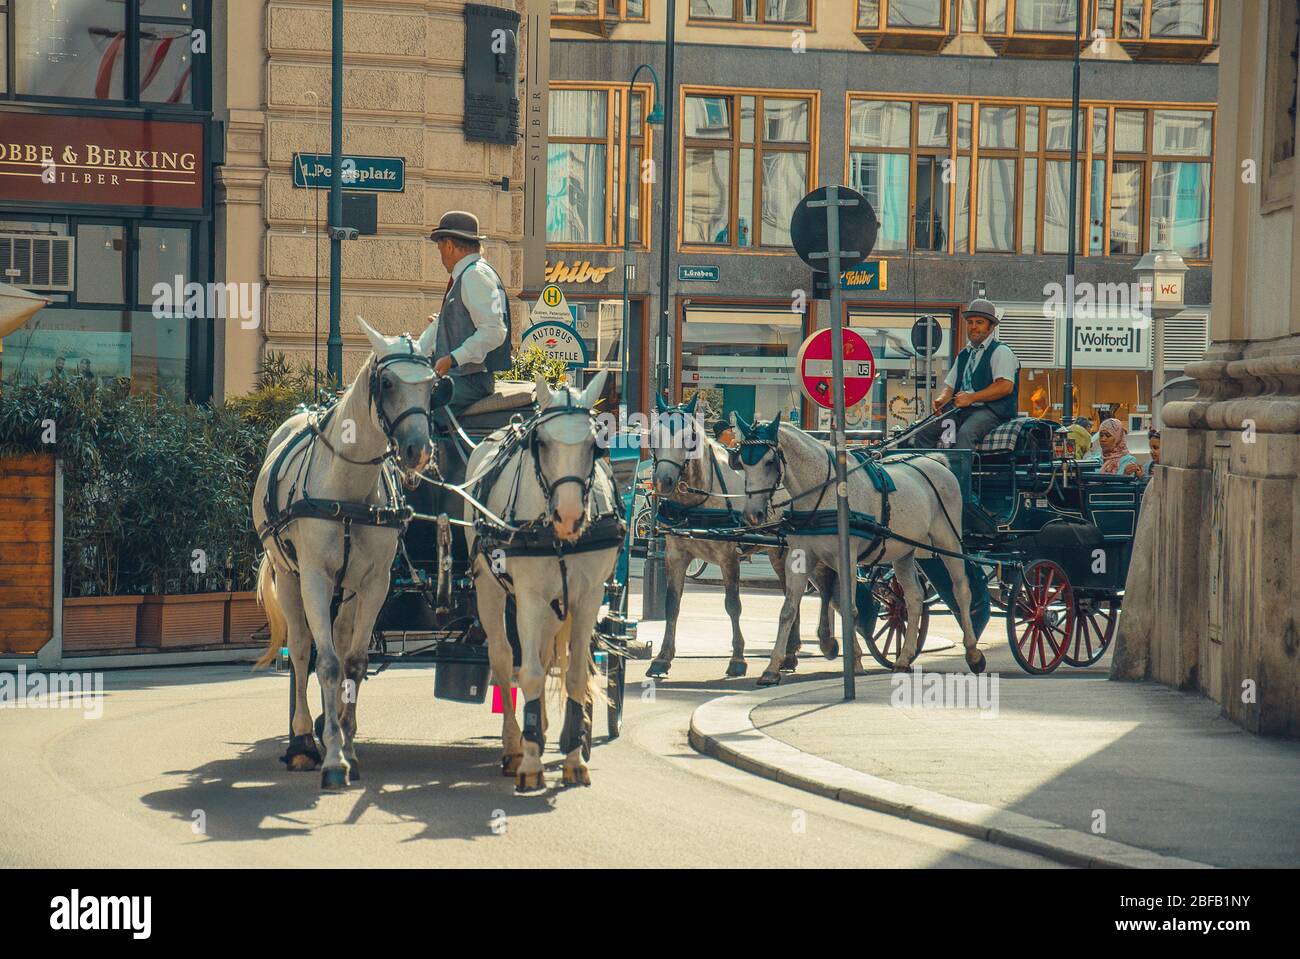 Wien, Österreich - 27. Juli 2015: Pferdekutschen in modernen Straßen Wiens Stockfoto